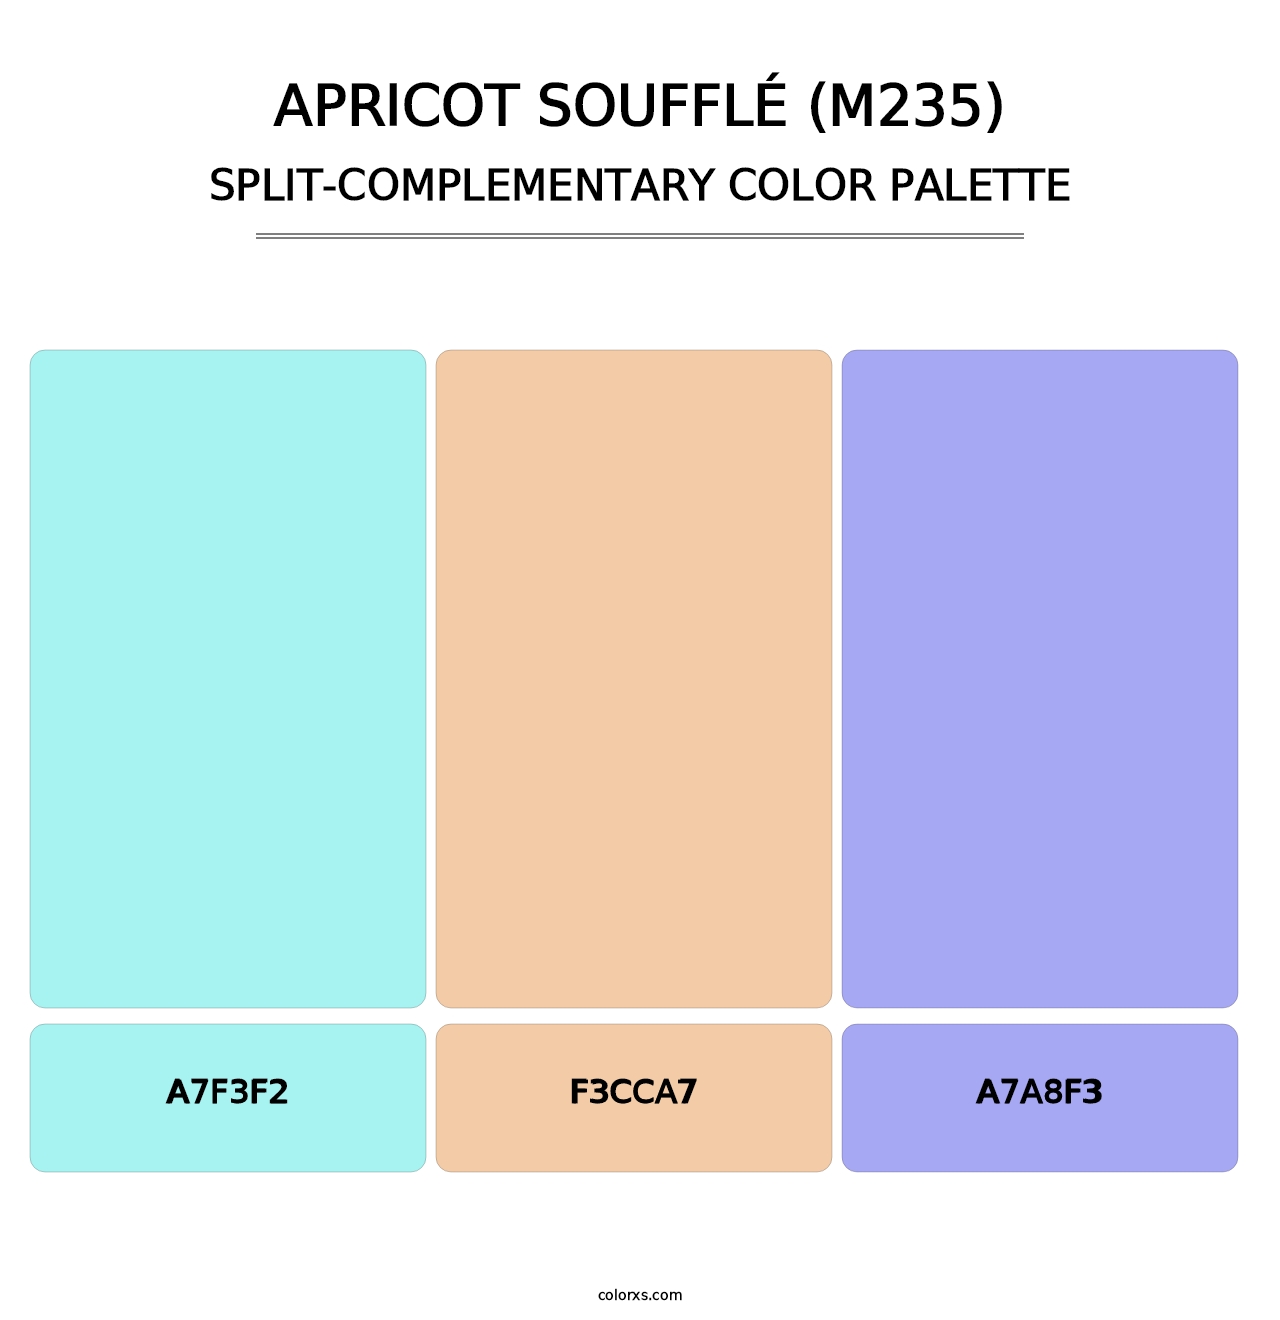 Apricot Soufflé (M235) - Split-Complementary Color Palette